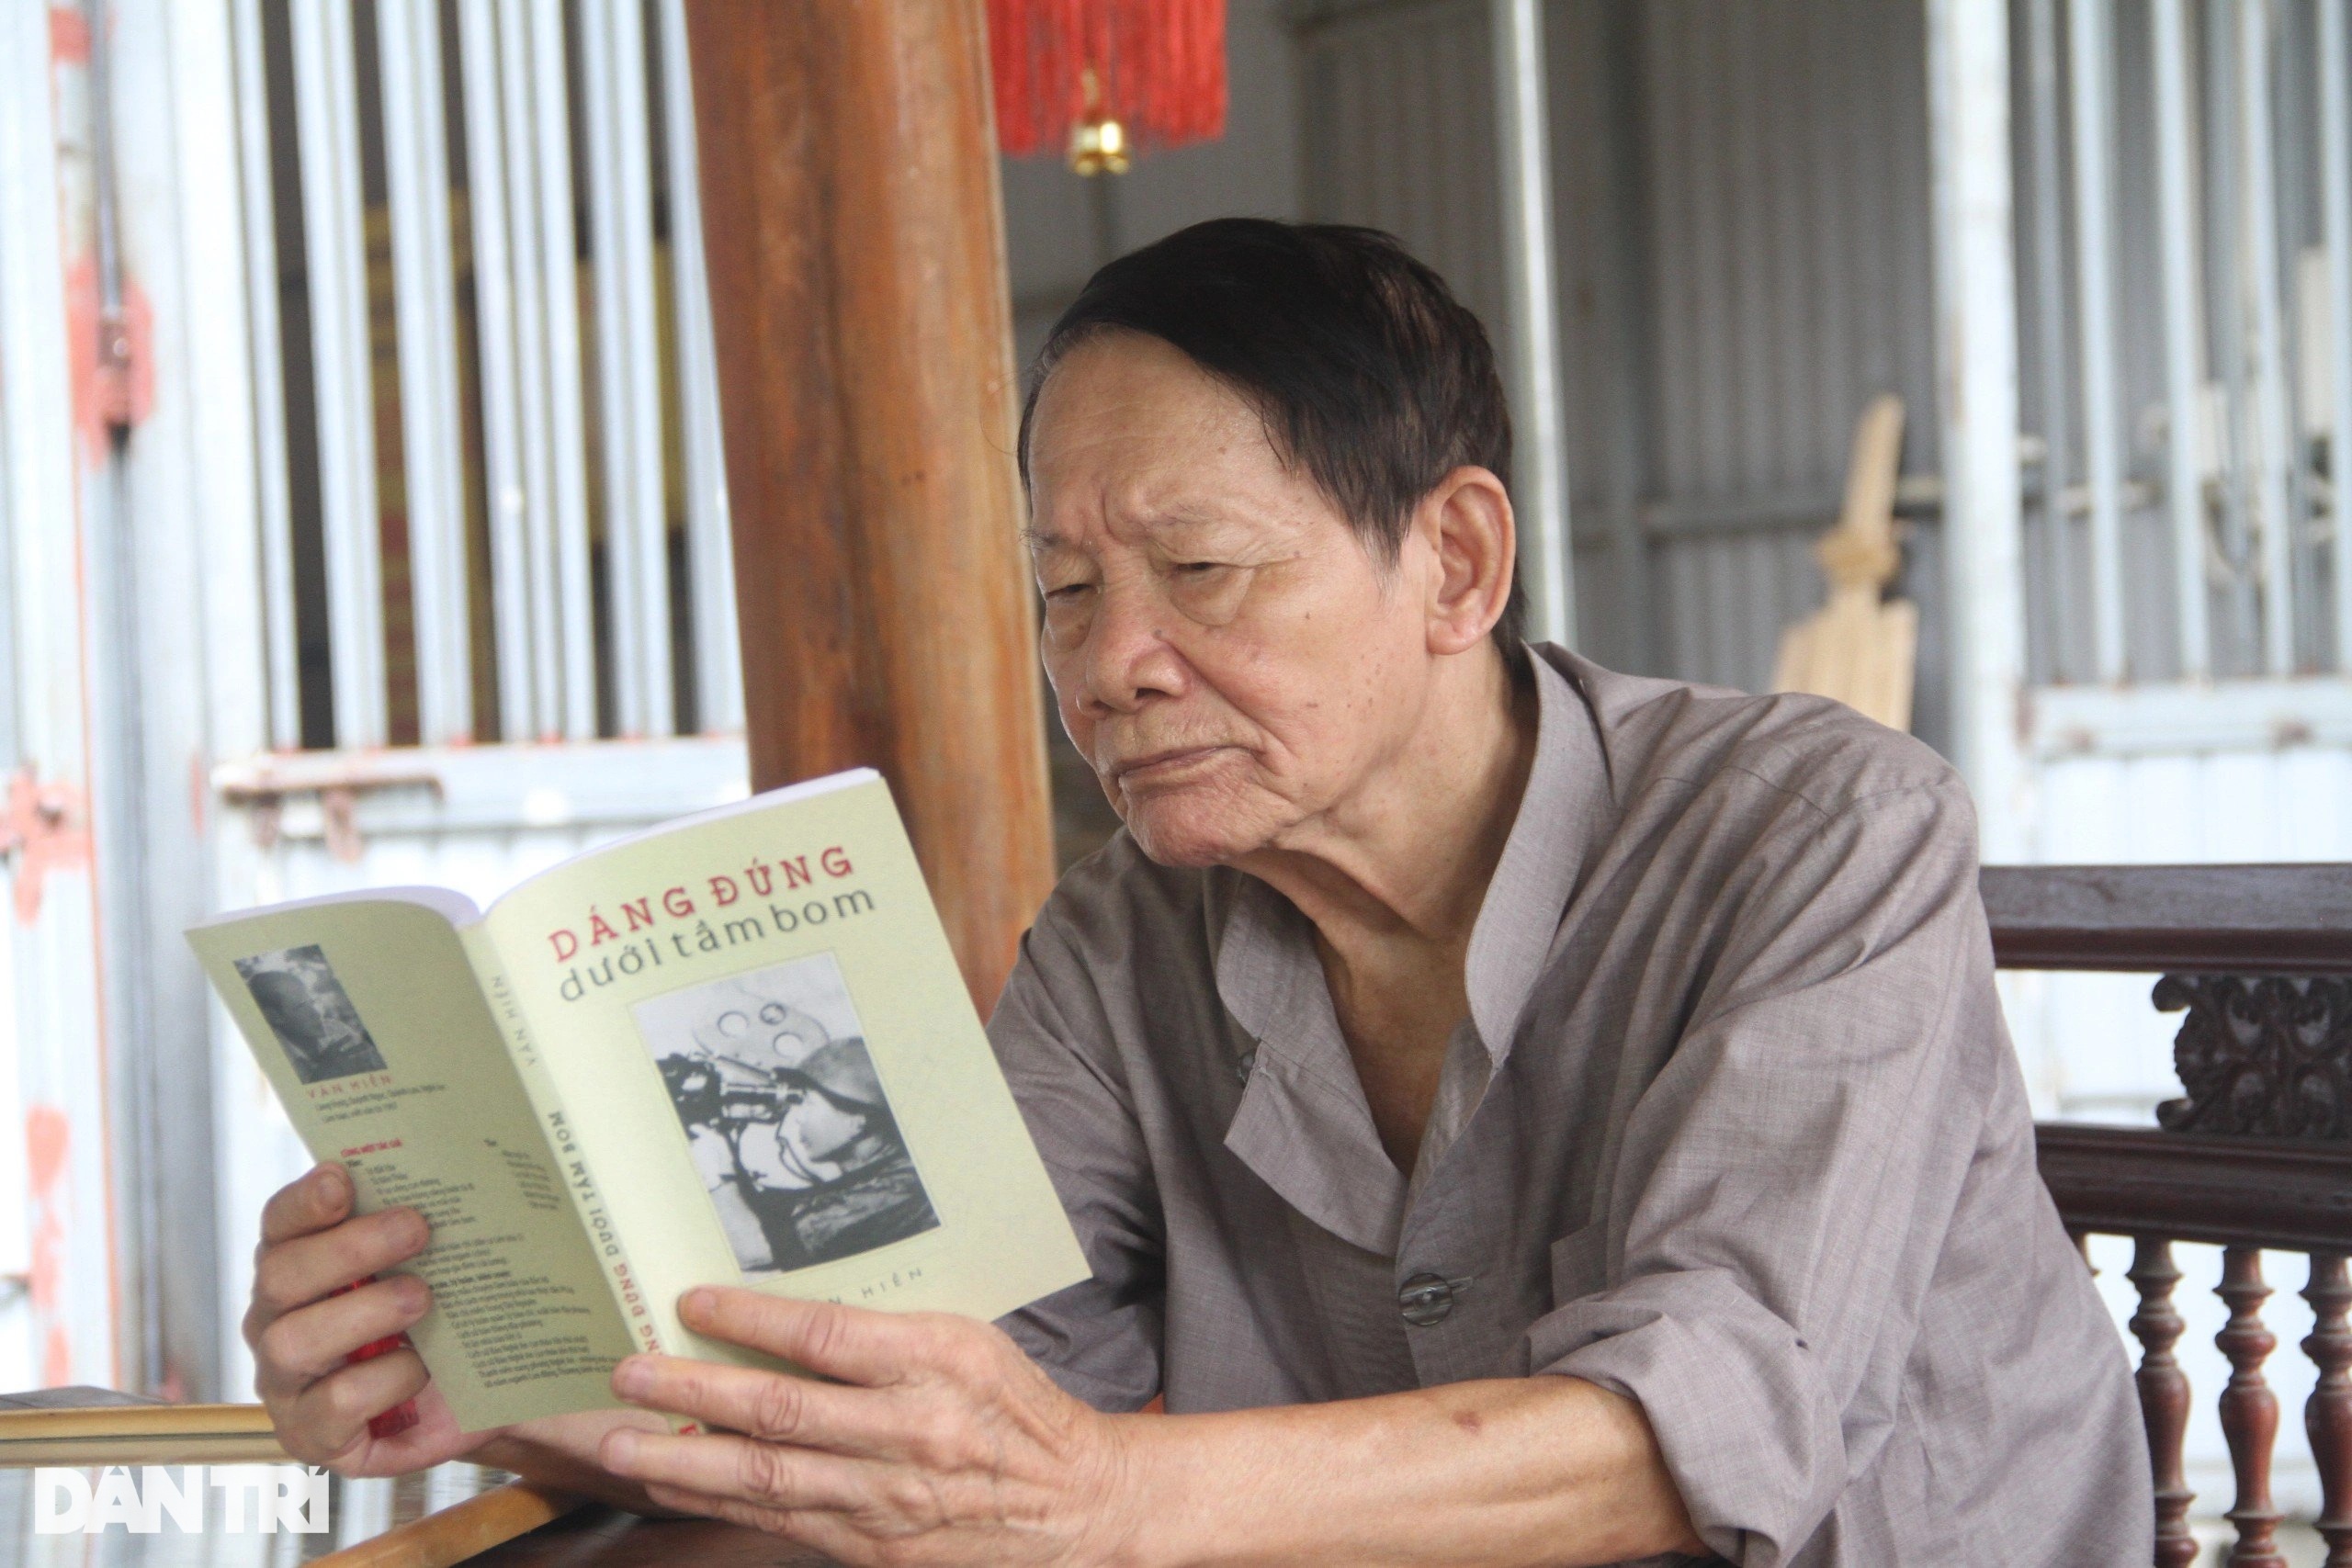 Nhà báo Trần Văn Hiền và cuốn sách ông tâm huyết "Dáng đứng dưới tầm bom" (Ảnh: Nguyễn Phê).